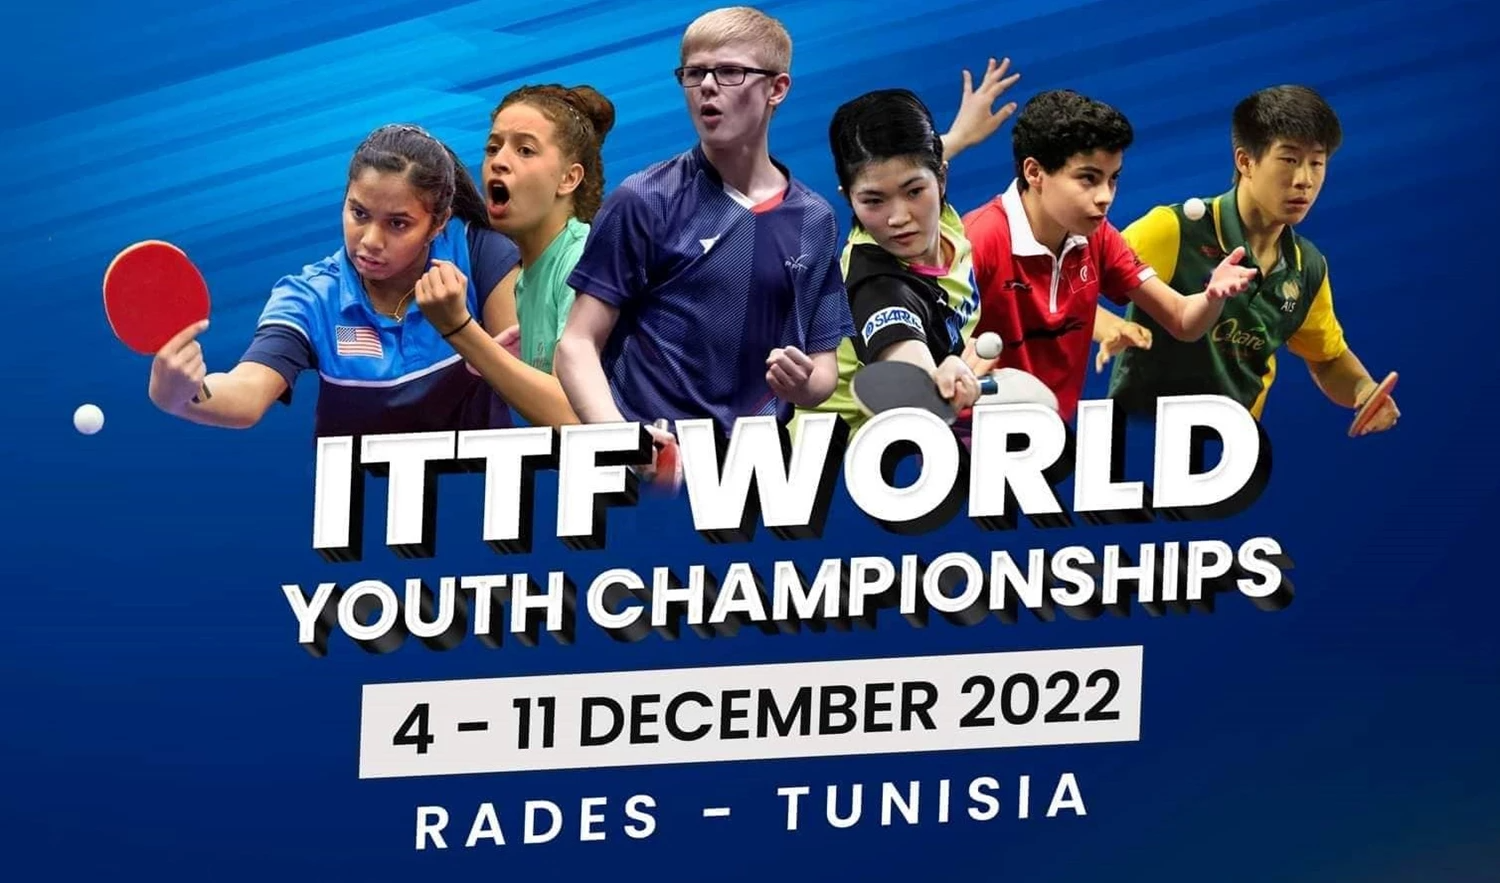 تونس تحتضن بطولة العالم للشبان لكرة الطاولة | التاسعة